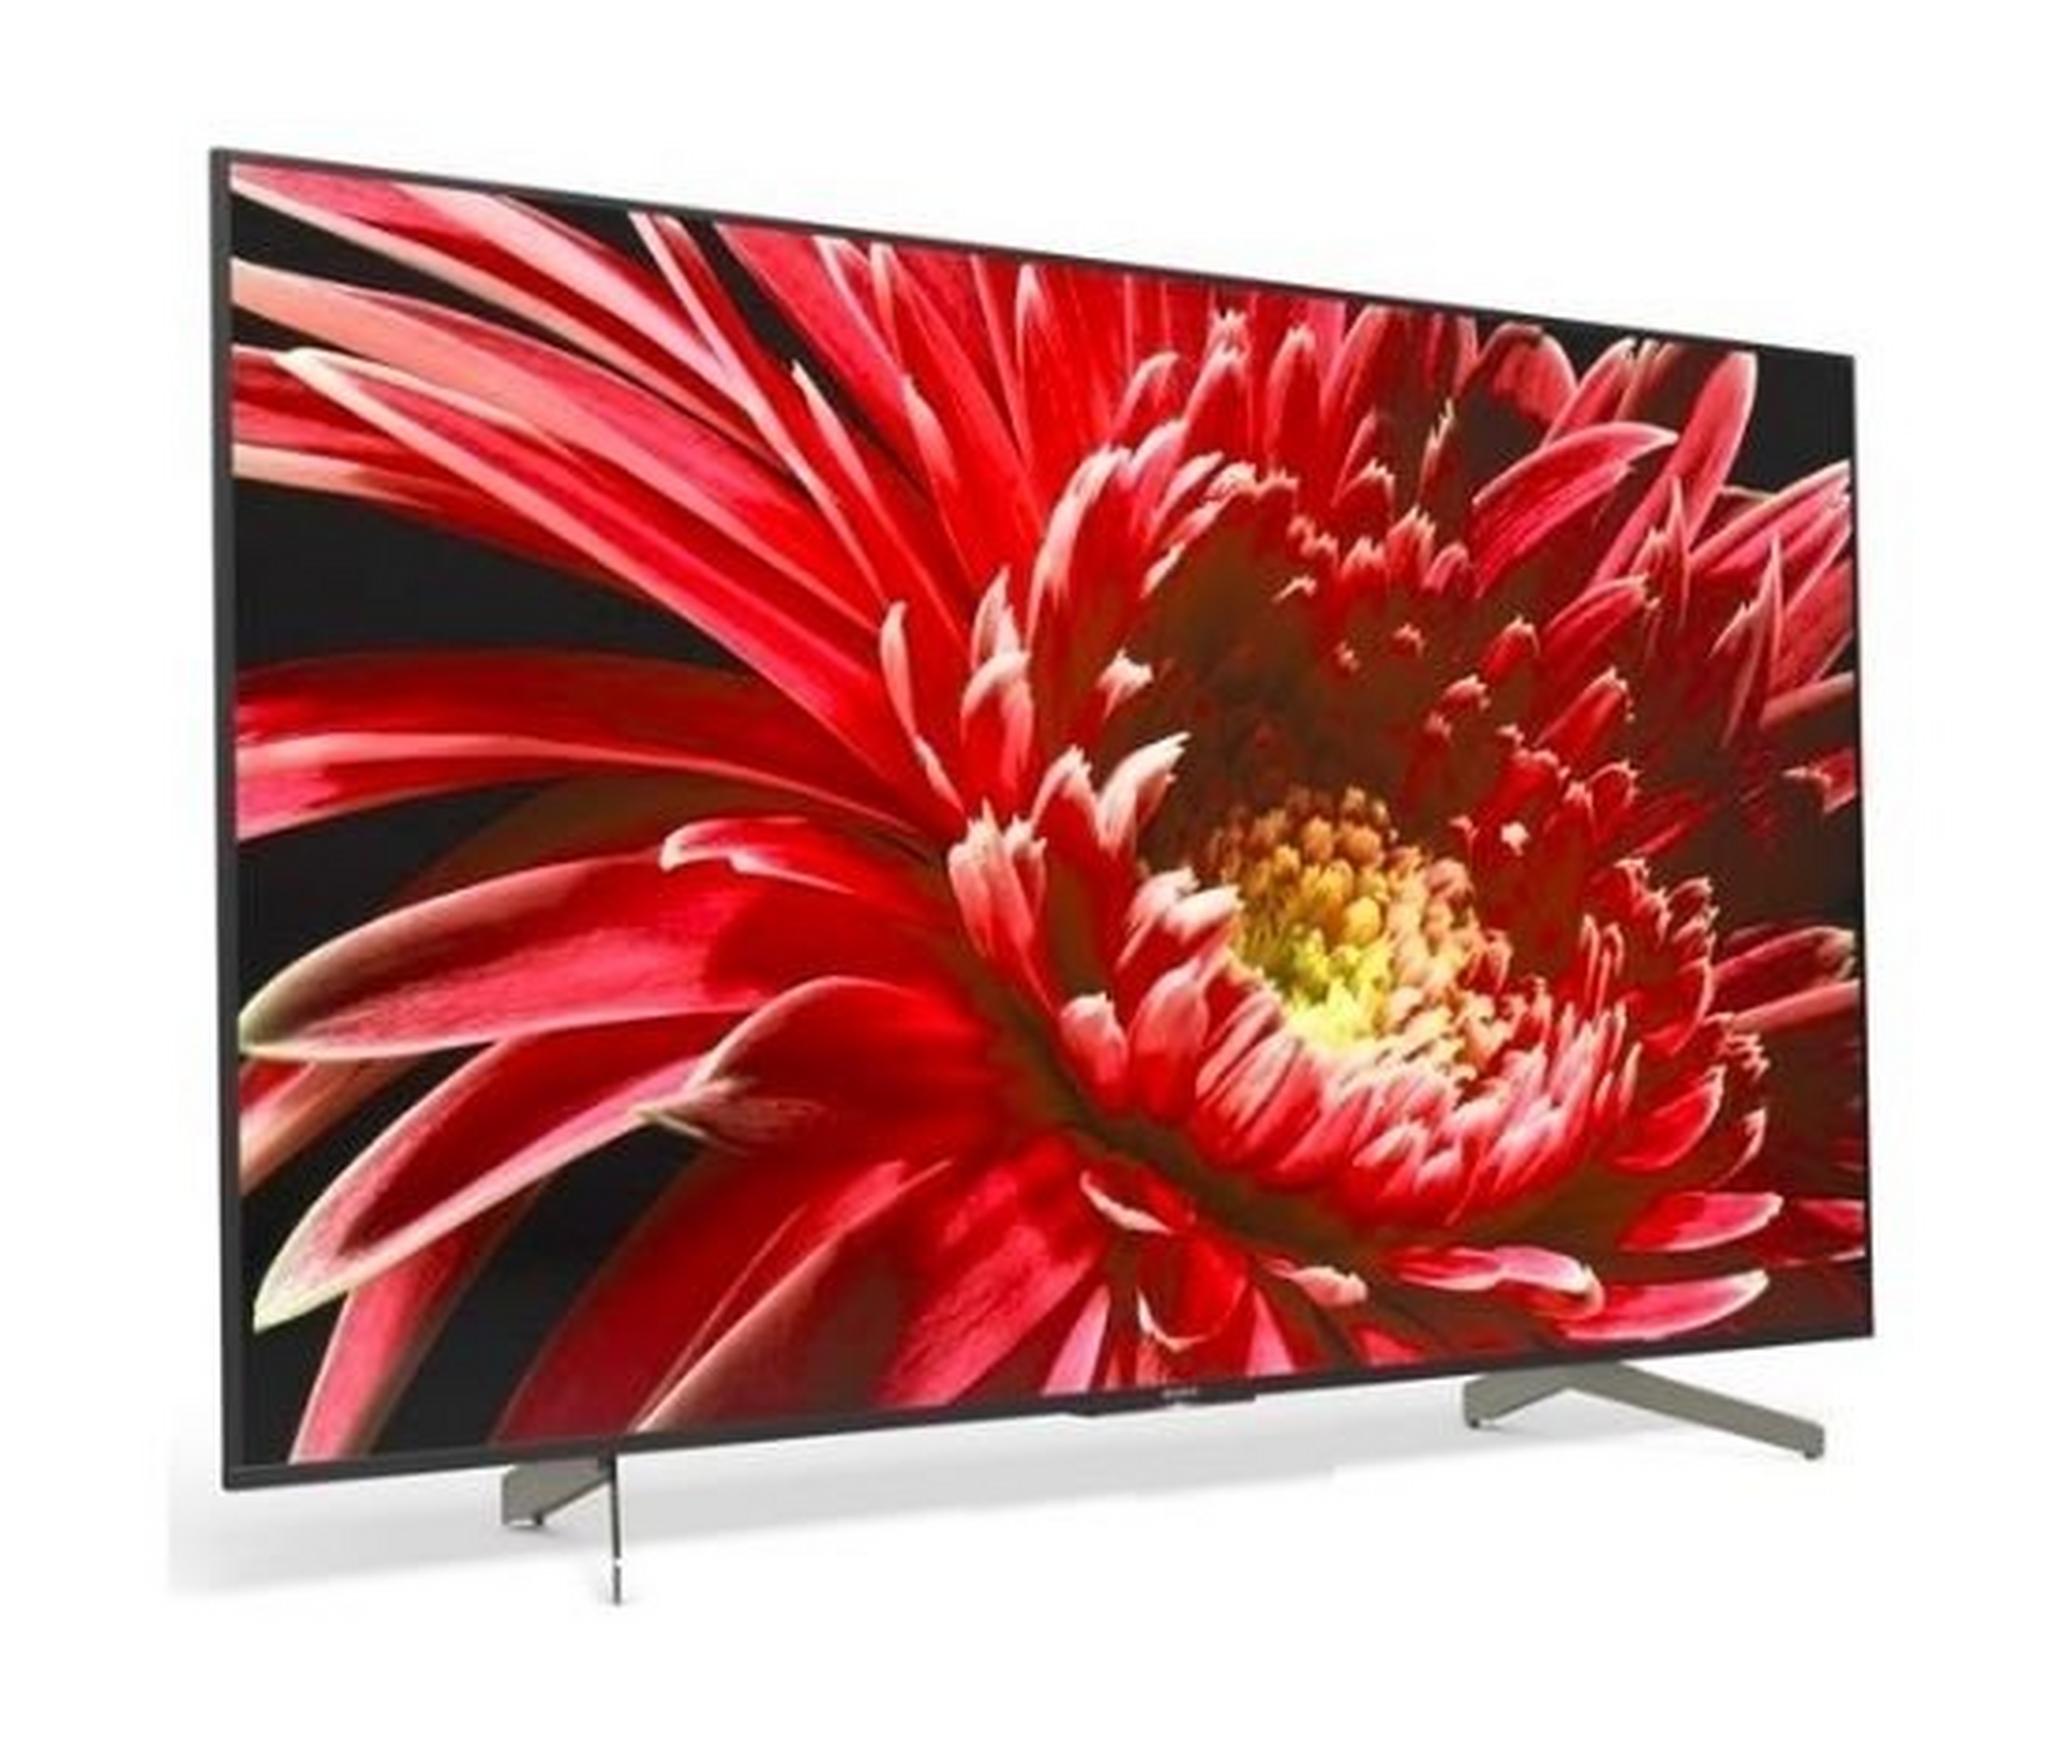 SONY TV 85 inch 4K Ultra HD Smart LED - KD-85X8500G